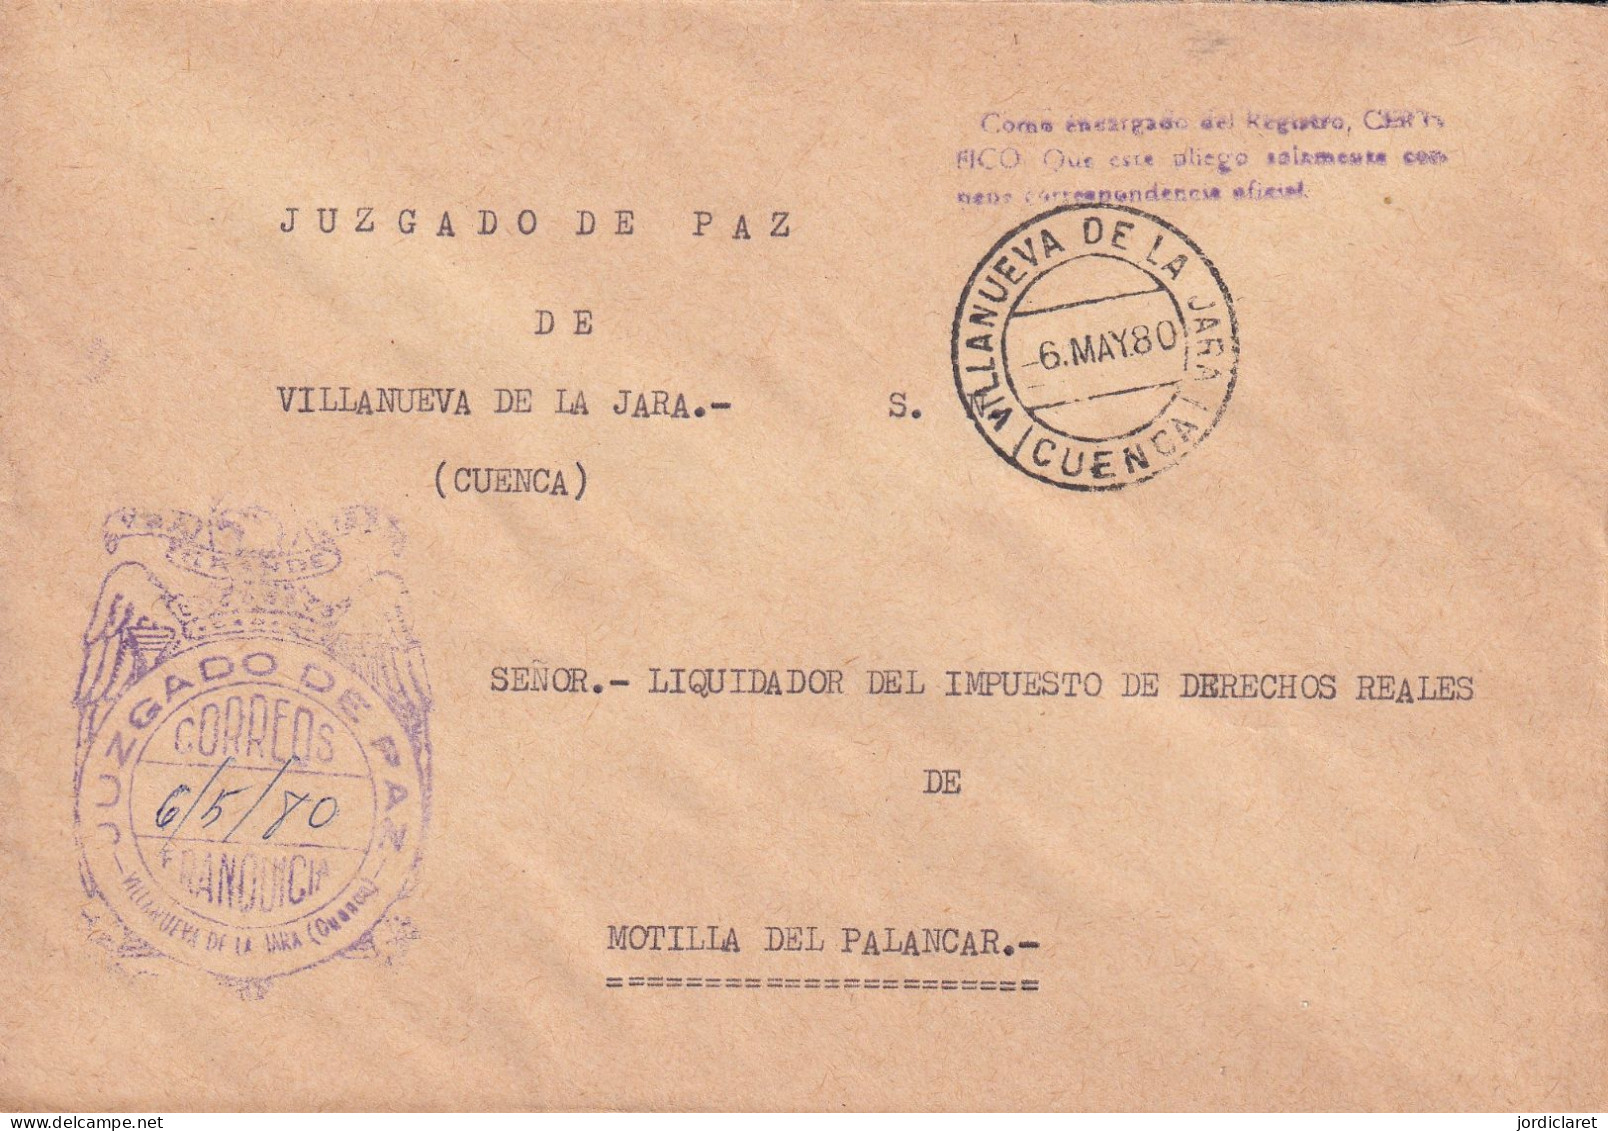 JUZGADO DE PAZ VILLANUEVA DE LA JARA CUENCA 1980 - Postage Free